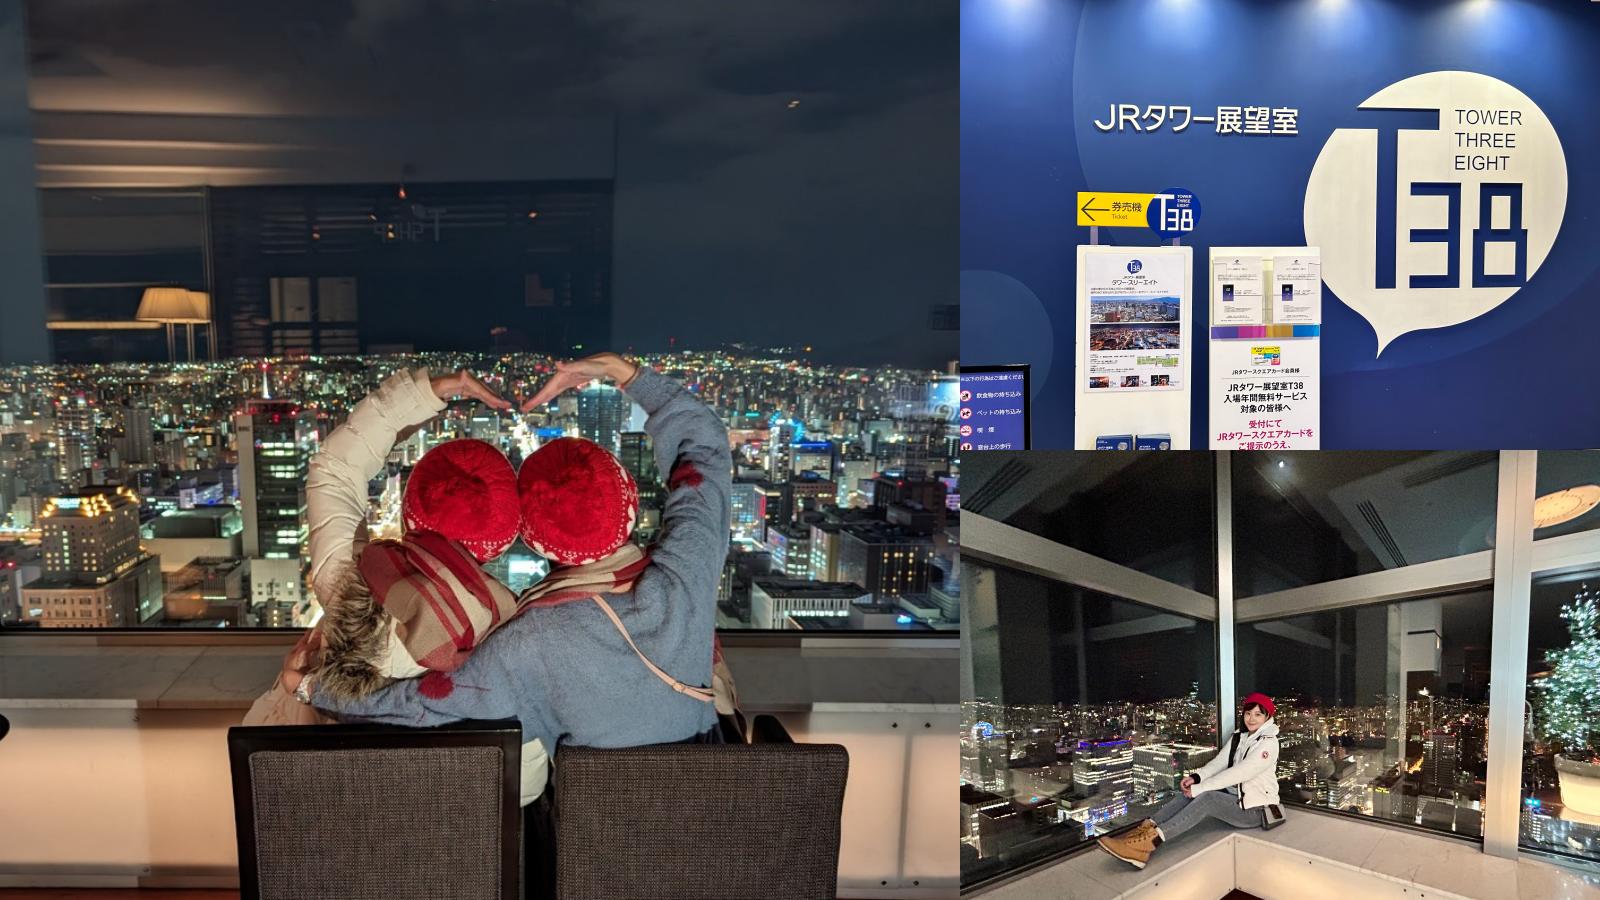 延伸閱讀：☆【北海道】JR 塔展望室 T38。北海道最高觀景臺360度高空夜景，門票+下午茶套票先買起來！